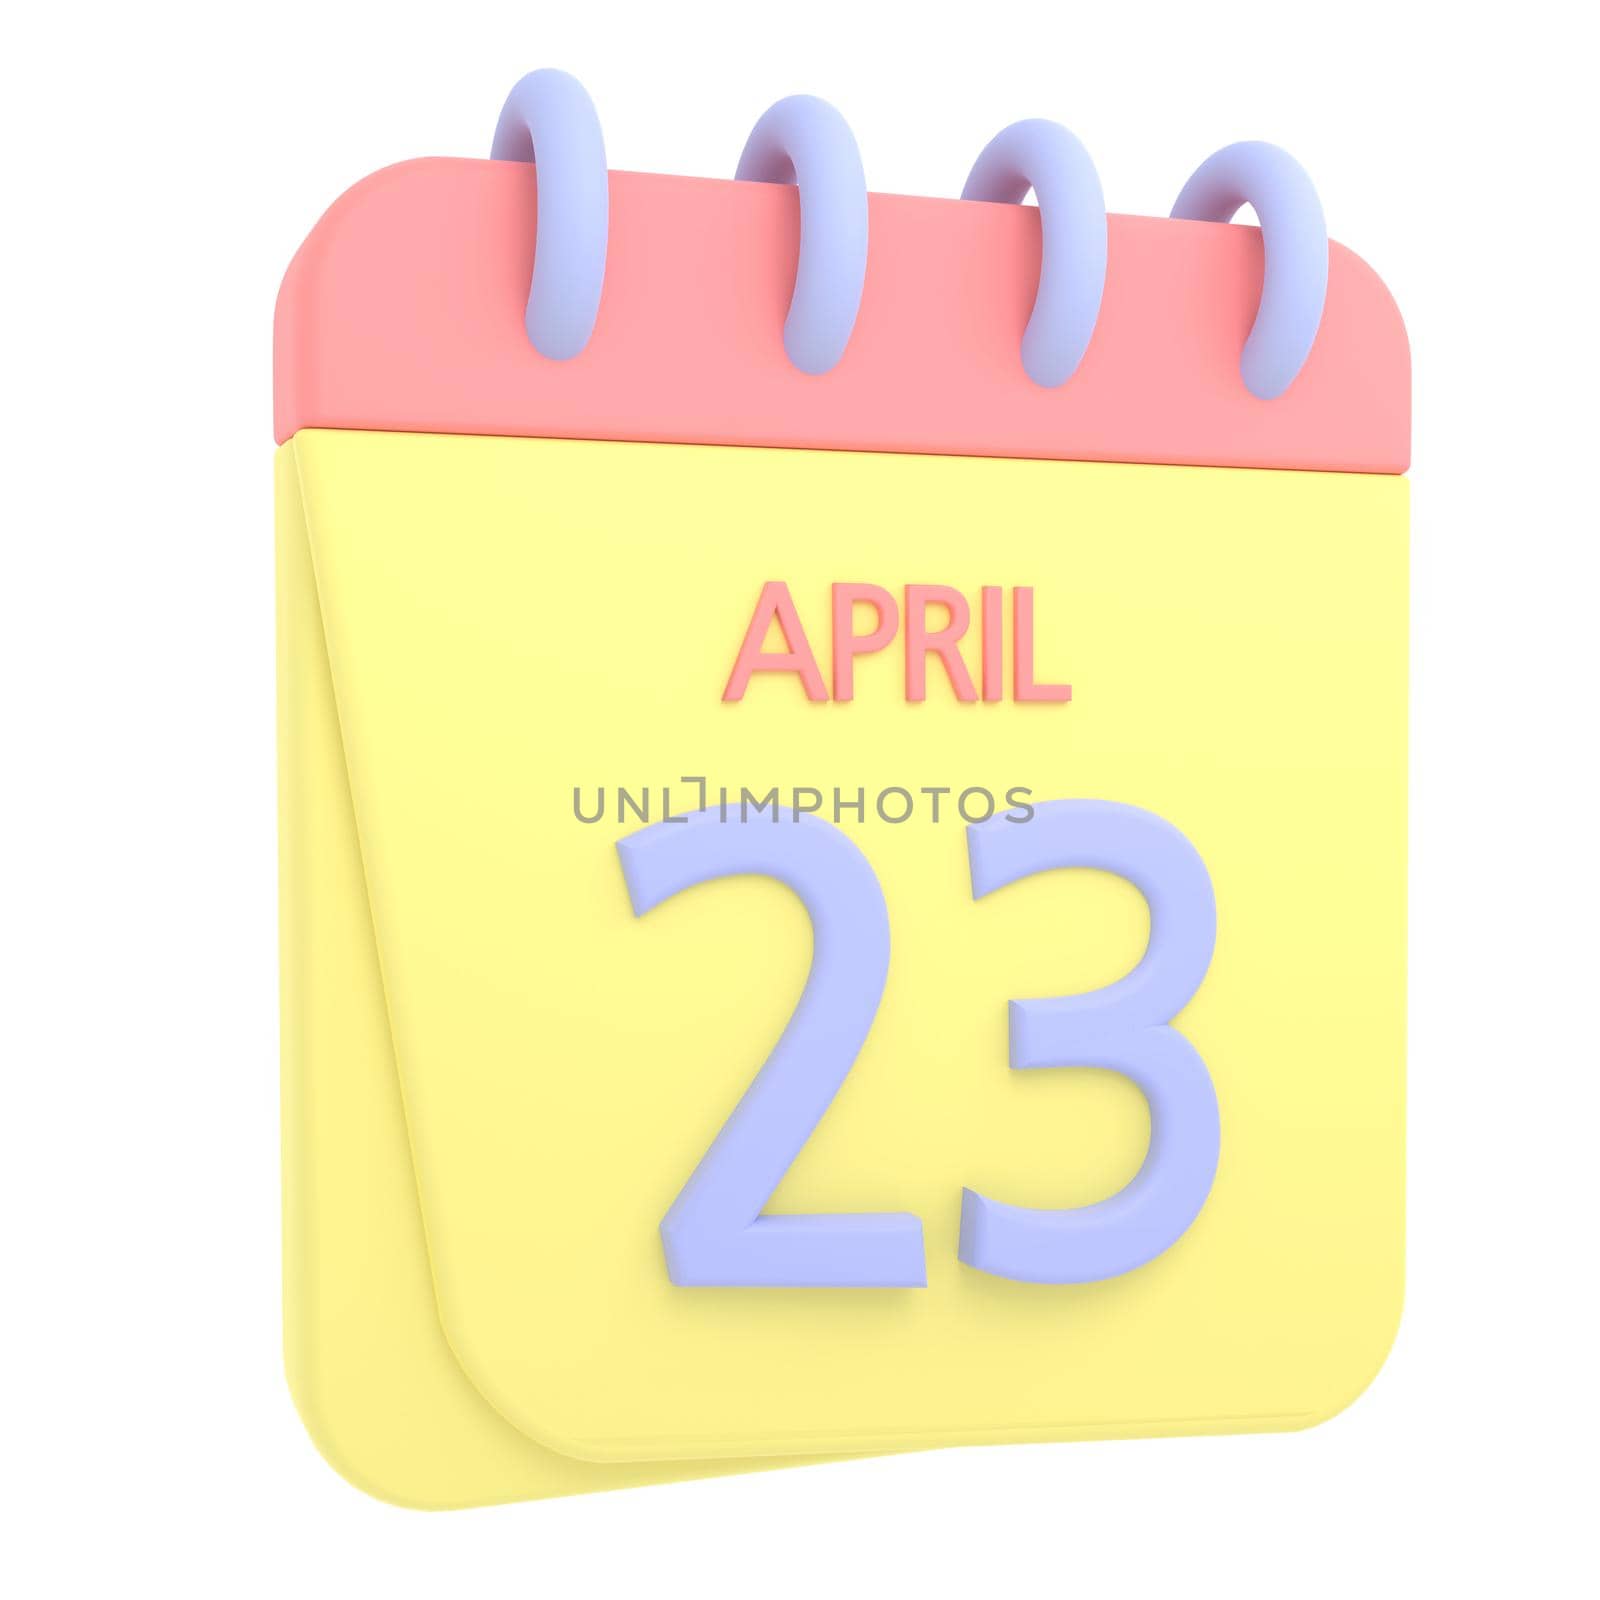 23rd April 3D calendar icon by AnnaMarin